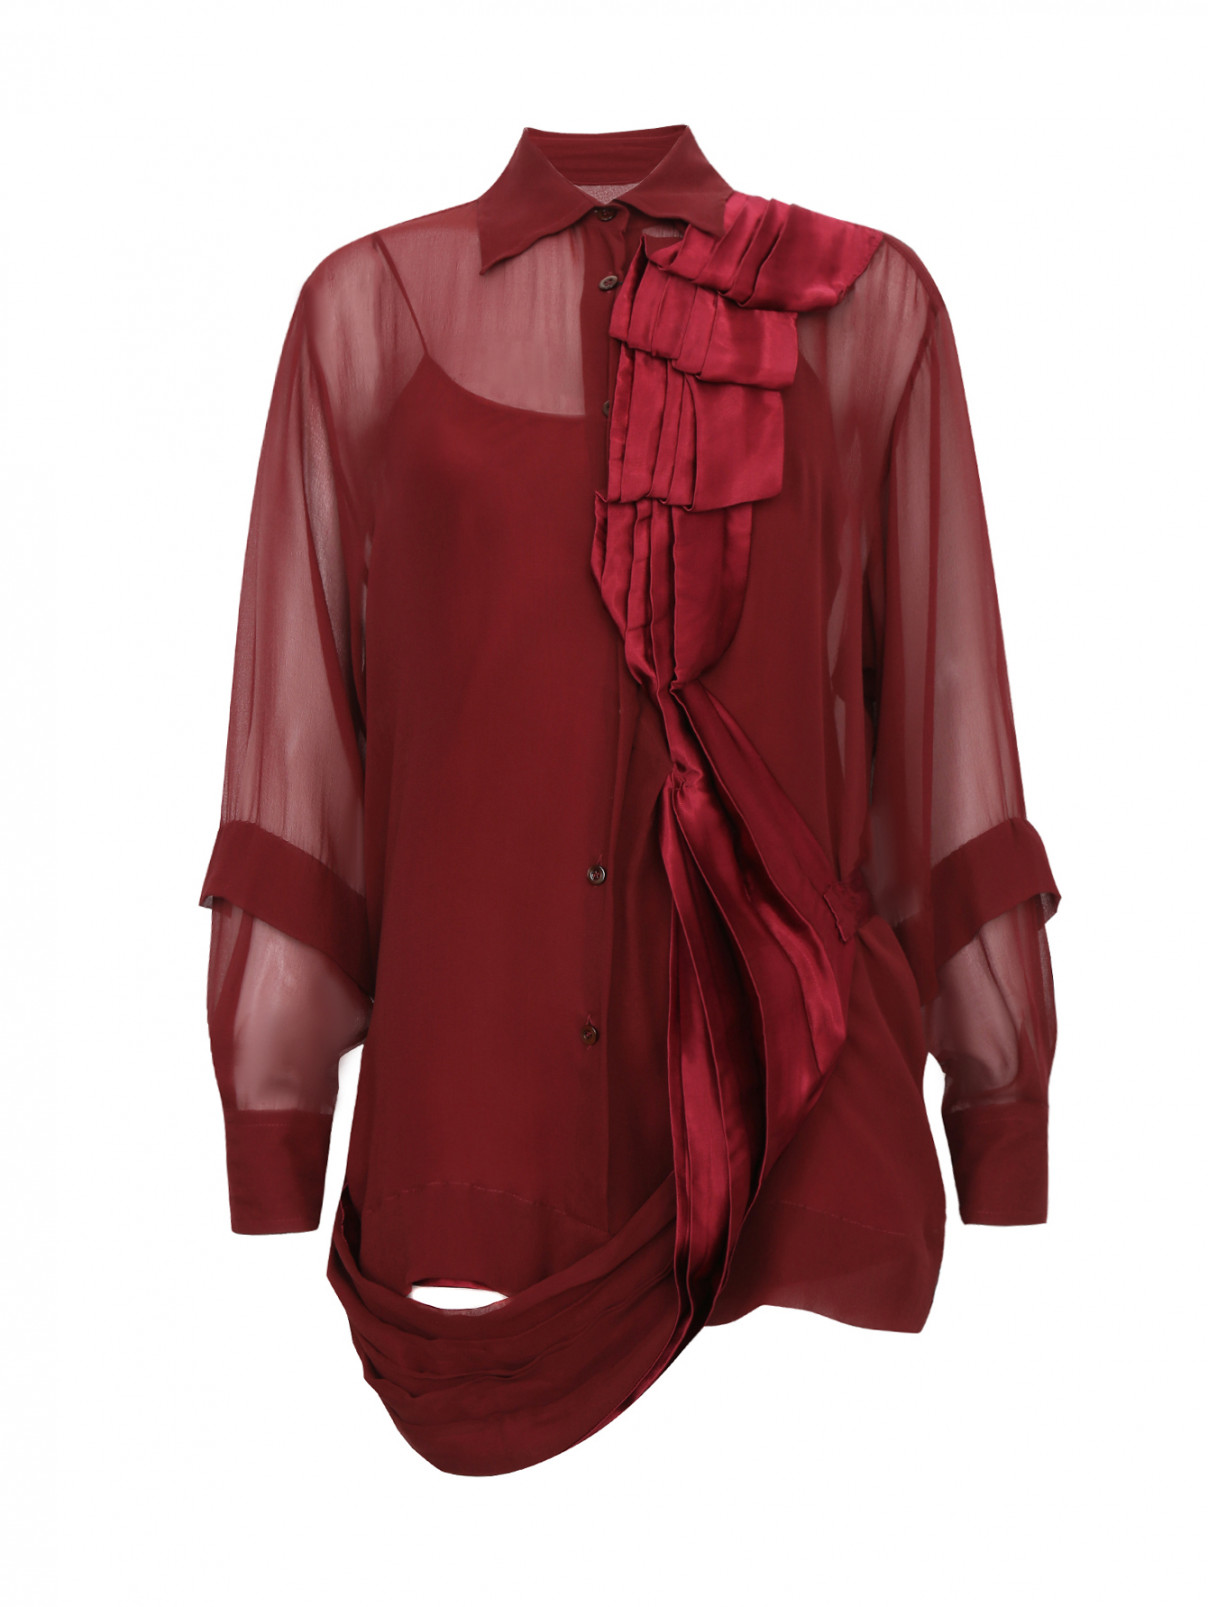 Блуза из шелка Antonio Marras  –  Общий вид  – Цвет:  Красный